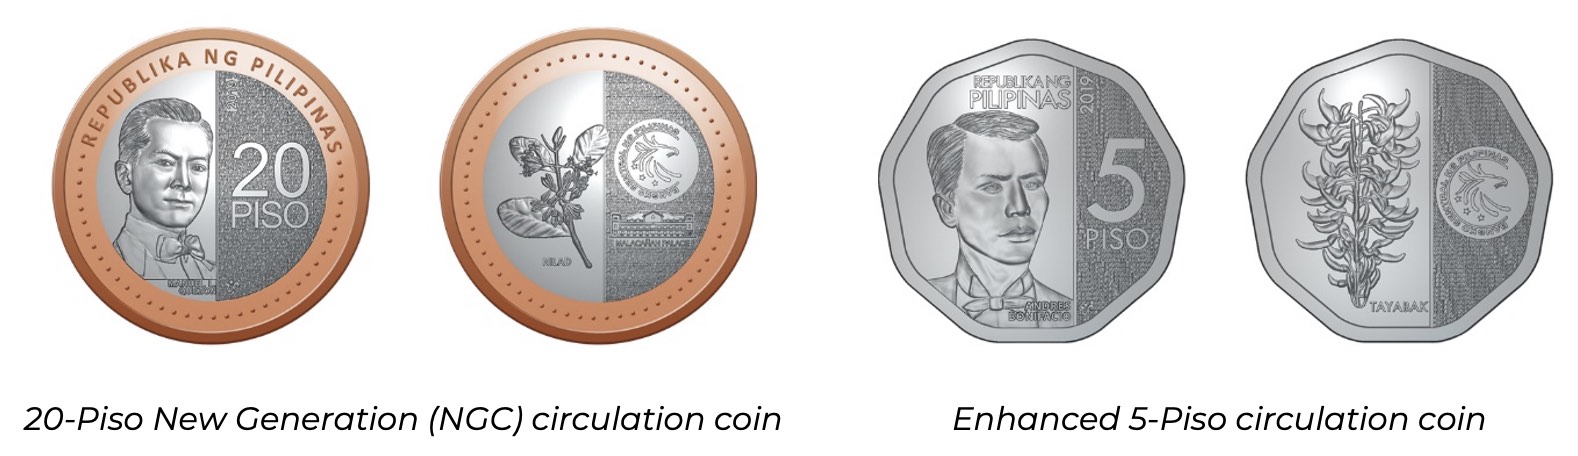 Photo_20-Piso NGC coin and Enhanced 5-Piso Coin.jpg